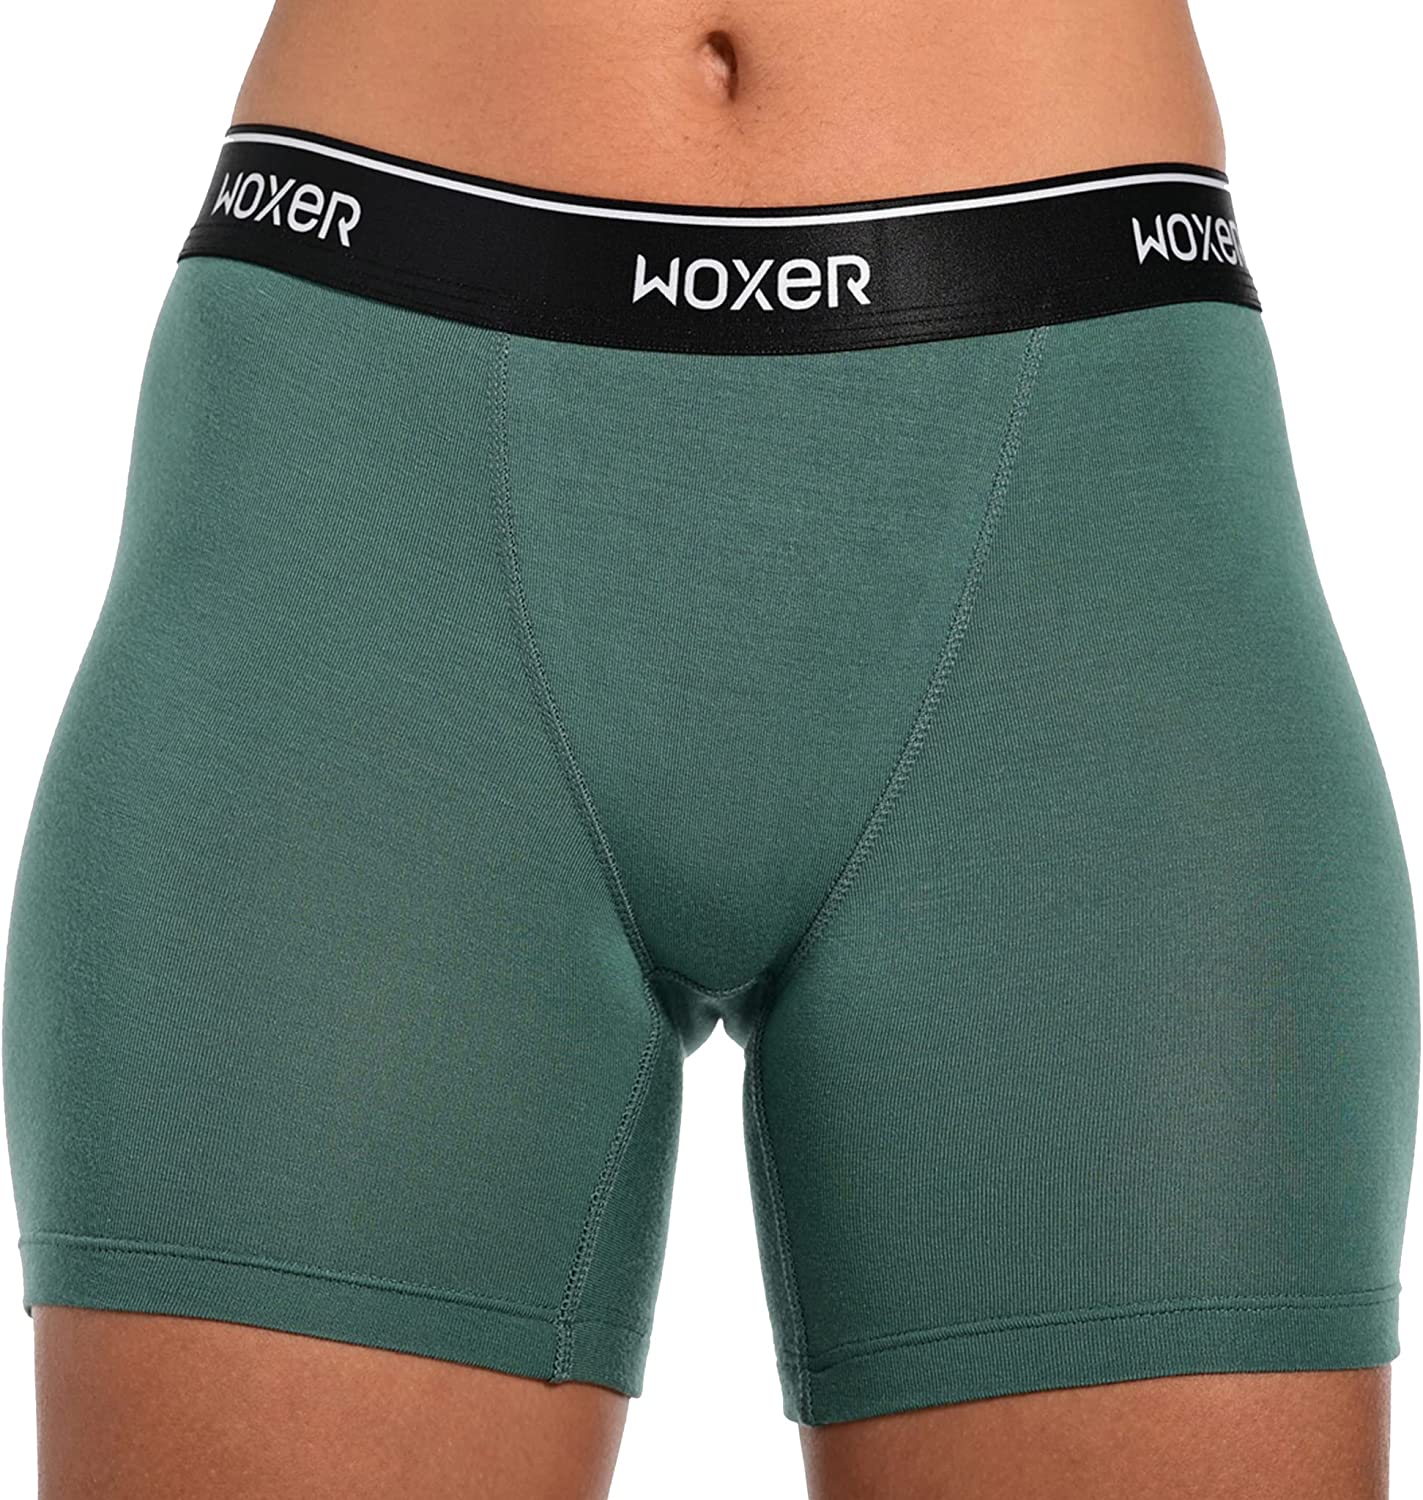 Woxer Women's Boxer Briefs Underwear, Baller 5” Nepal